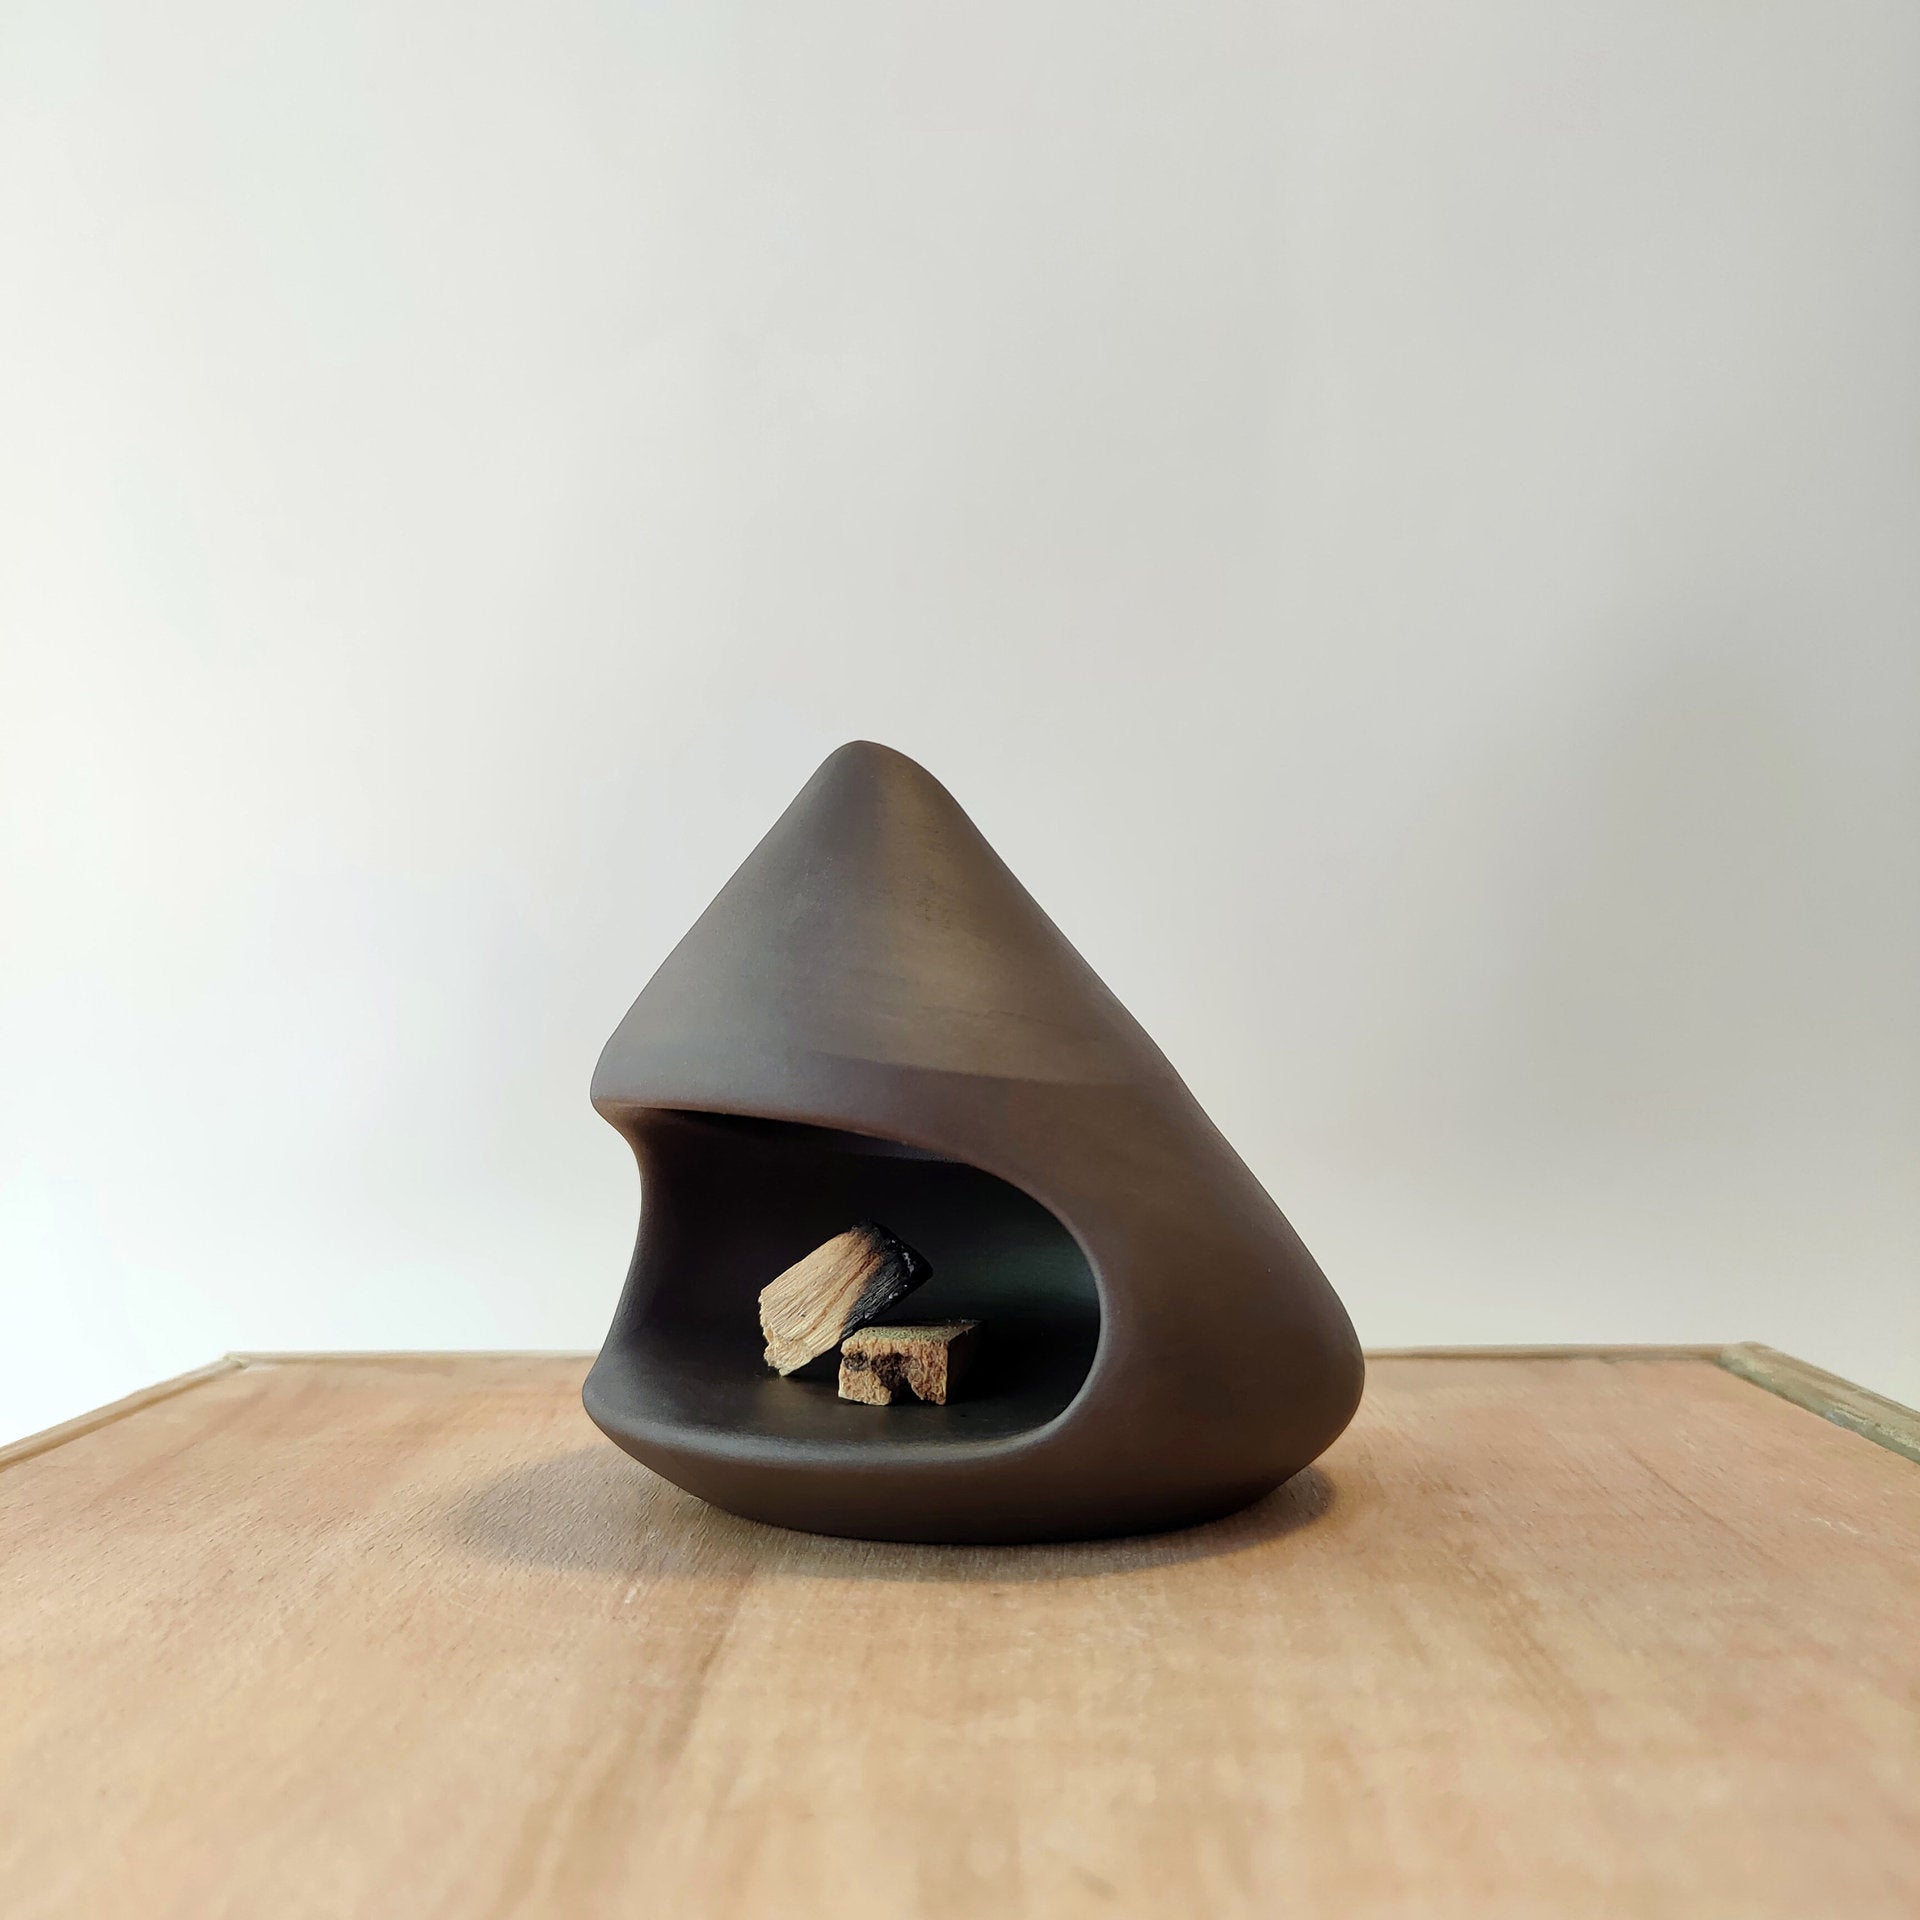 Ceramic Palo Santo Holder for Meditation and Home Décor